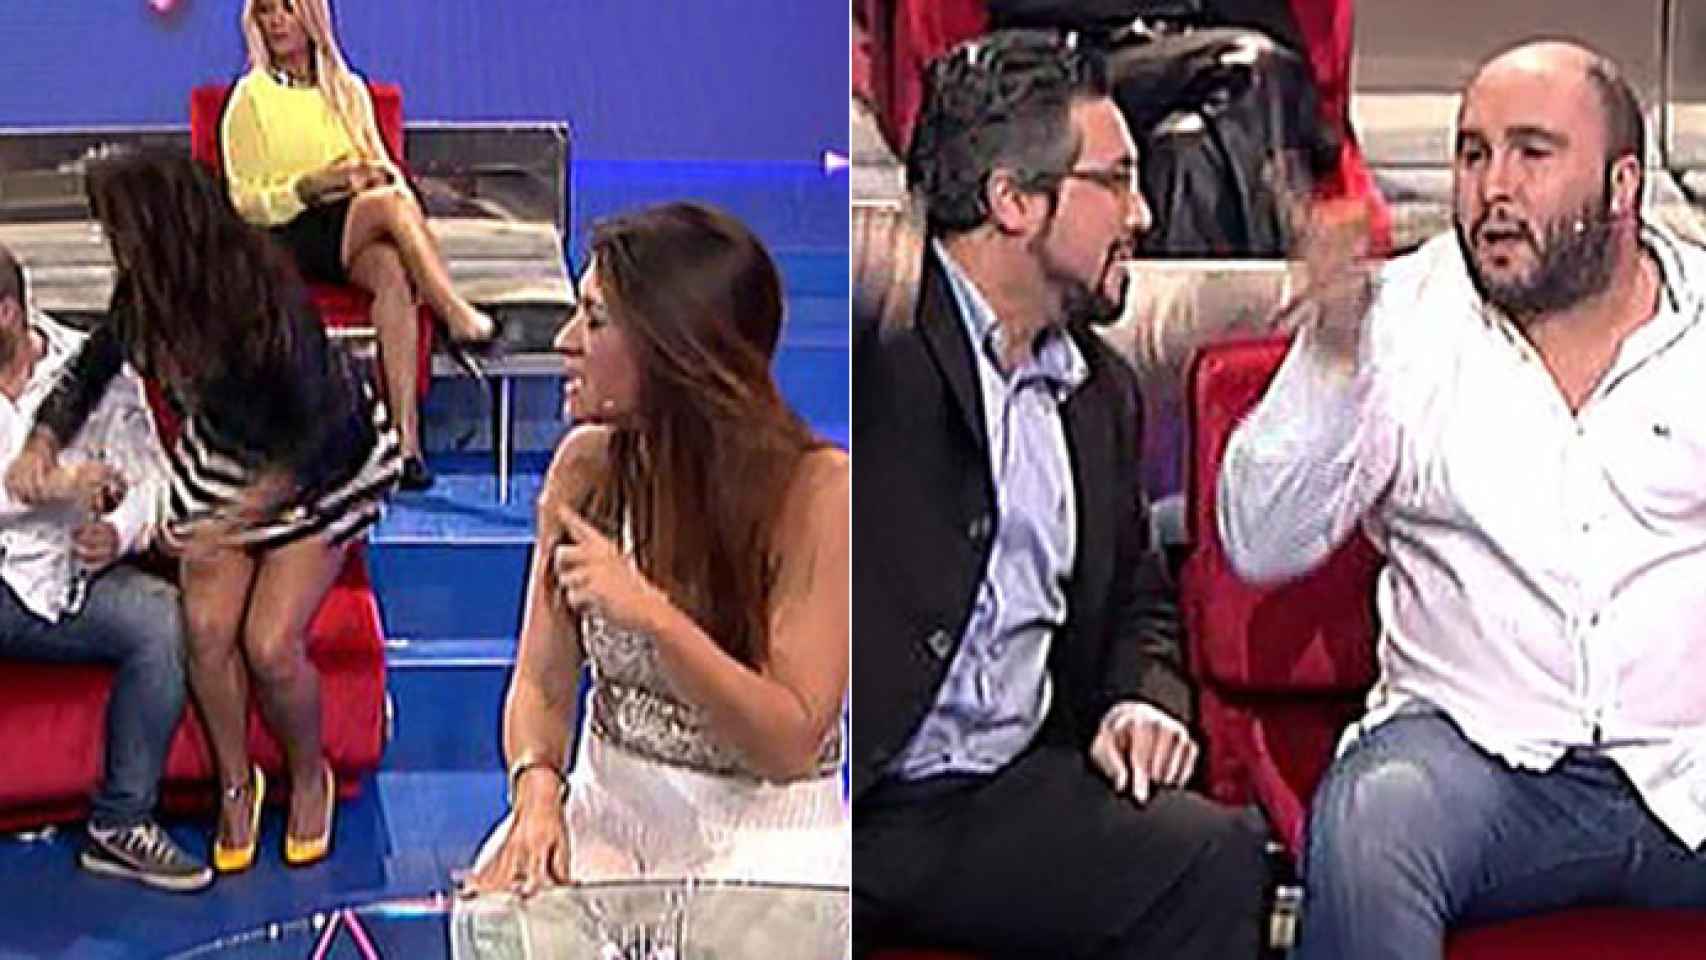 Tensión en plató entre Kiko Rivera y Laura Cuevas en la quinta gala de 'GH VIP'